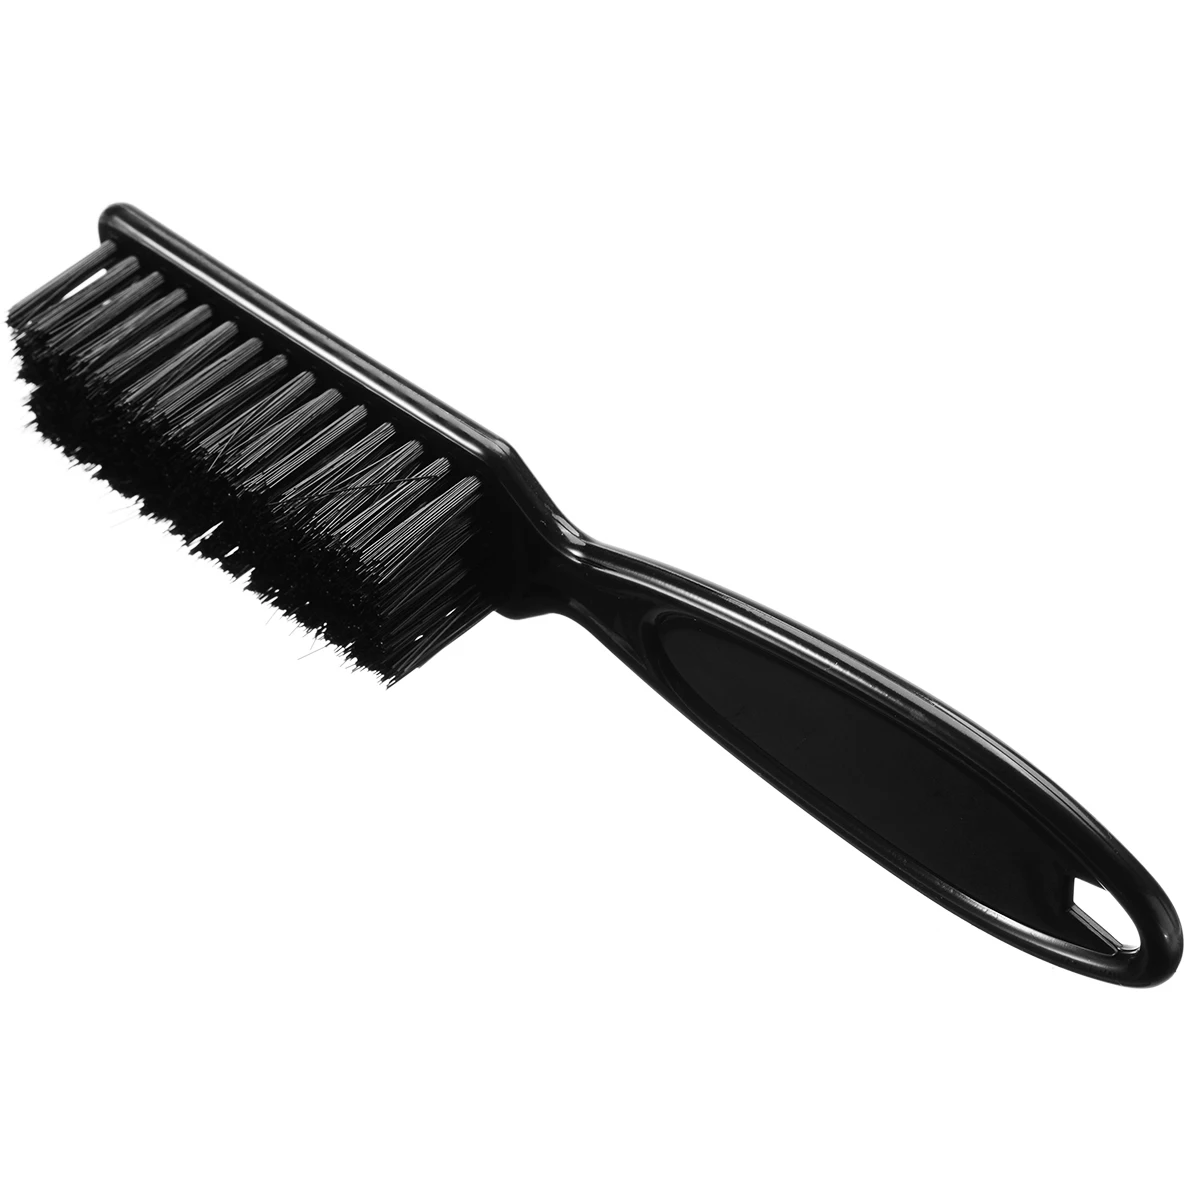 Профессиональные удобные инструменты для мужчин и женщин, расческа, ножницы, щетка для чистки, парикмахерские инструменты для волос, аксессуары для укладки